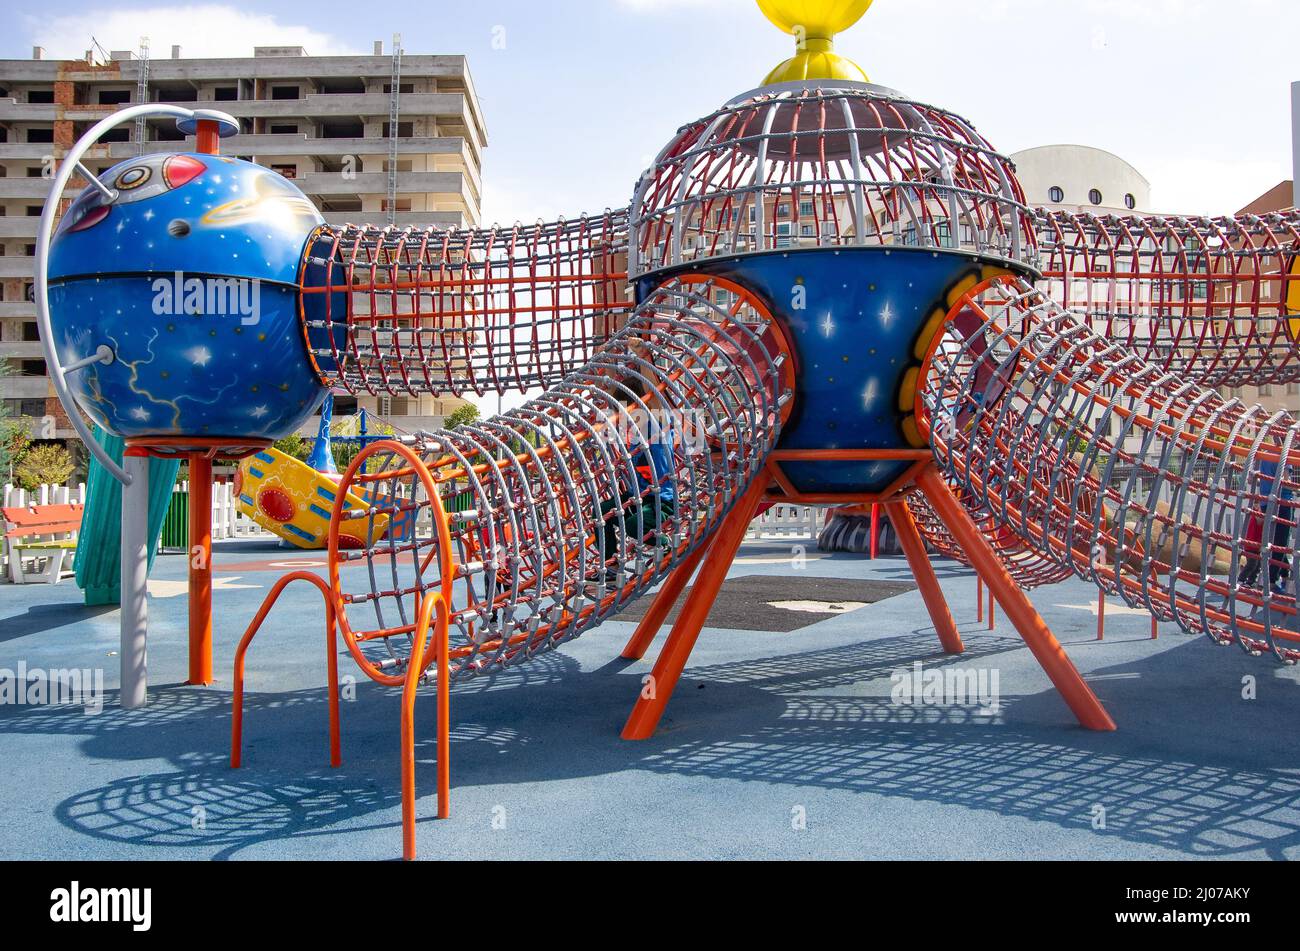 Spielplatz mit dem Thema Raum. Farbenfroher Spielplatz ohne Kinder. Stockfoto